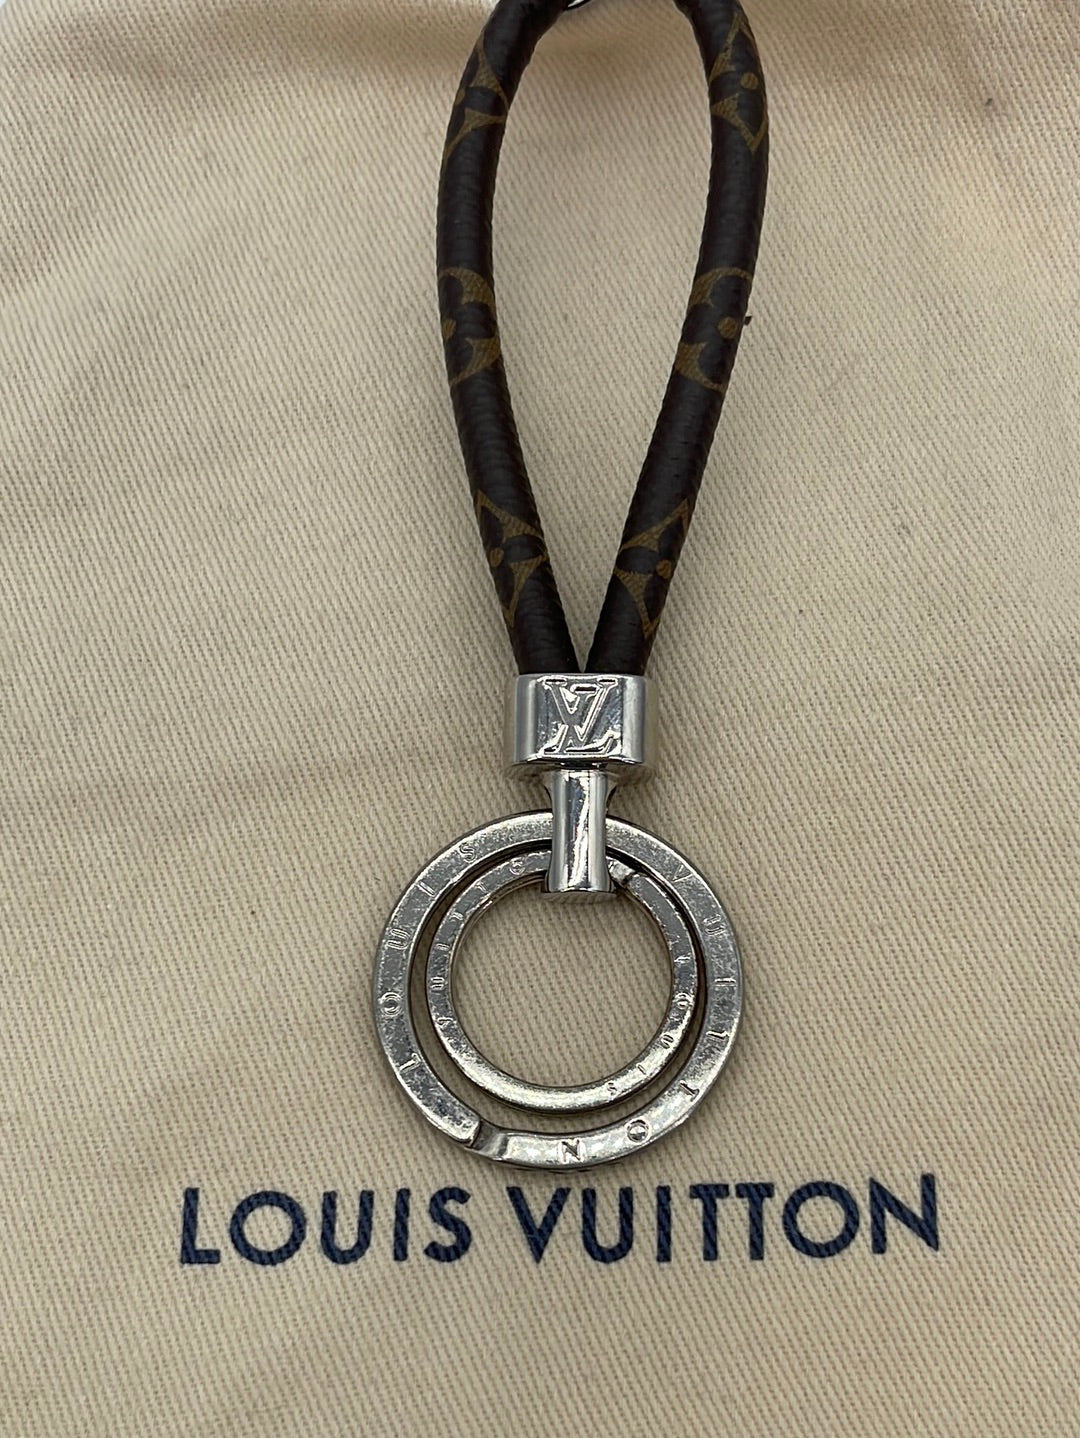 Louis Vuitton Key Chain-Review 